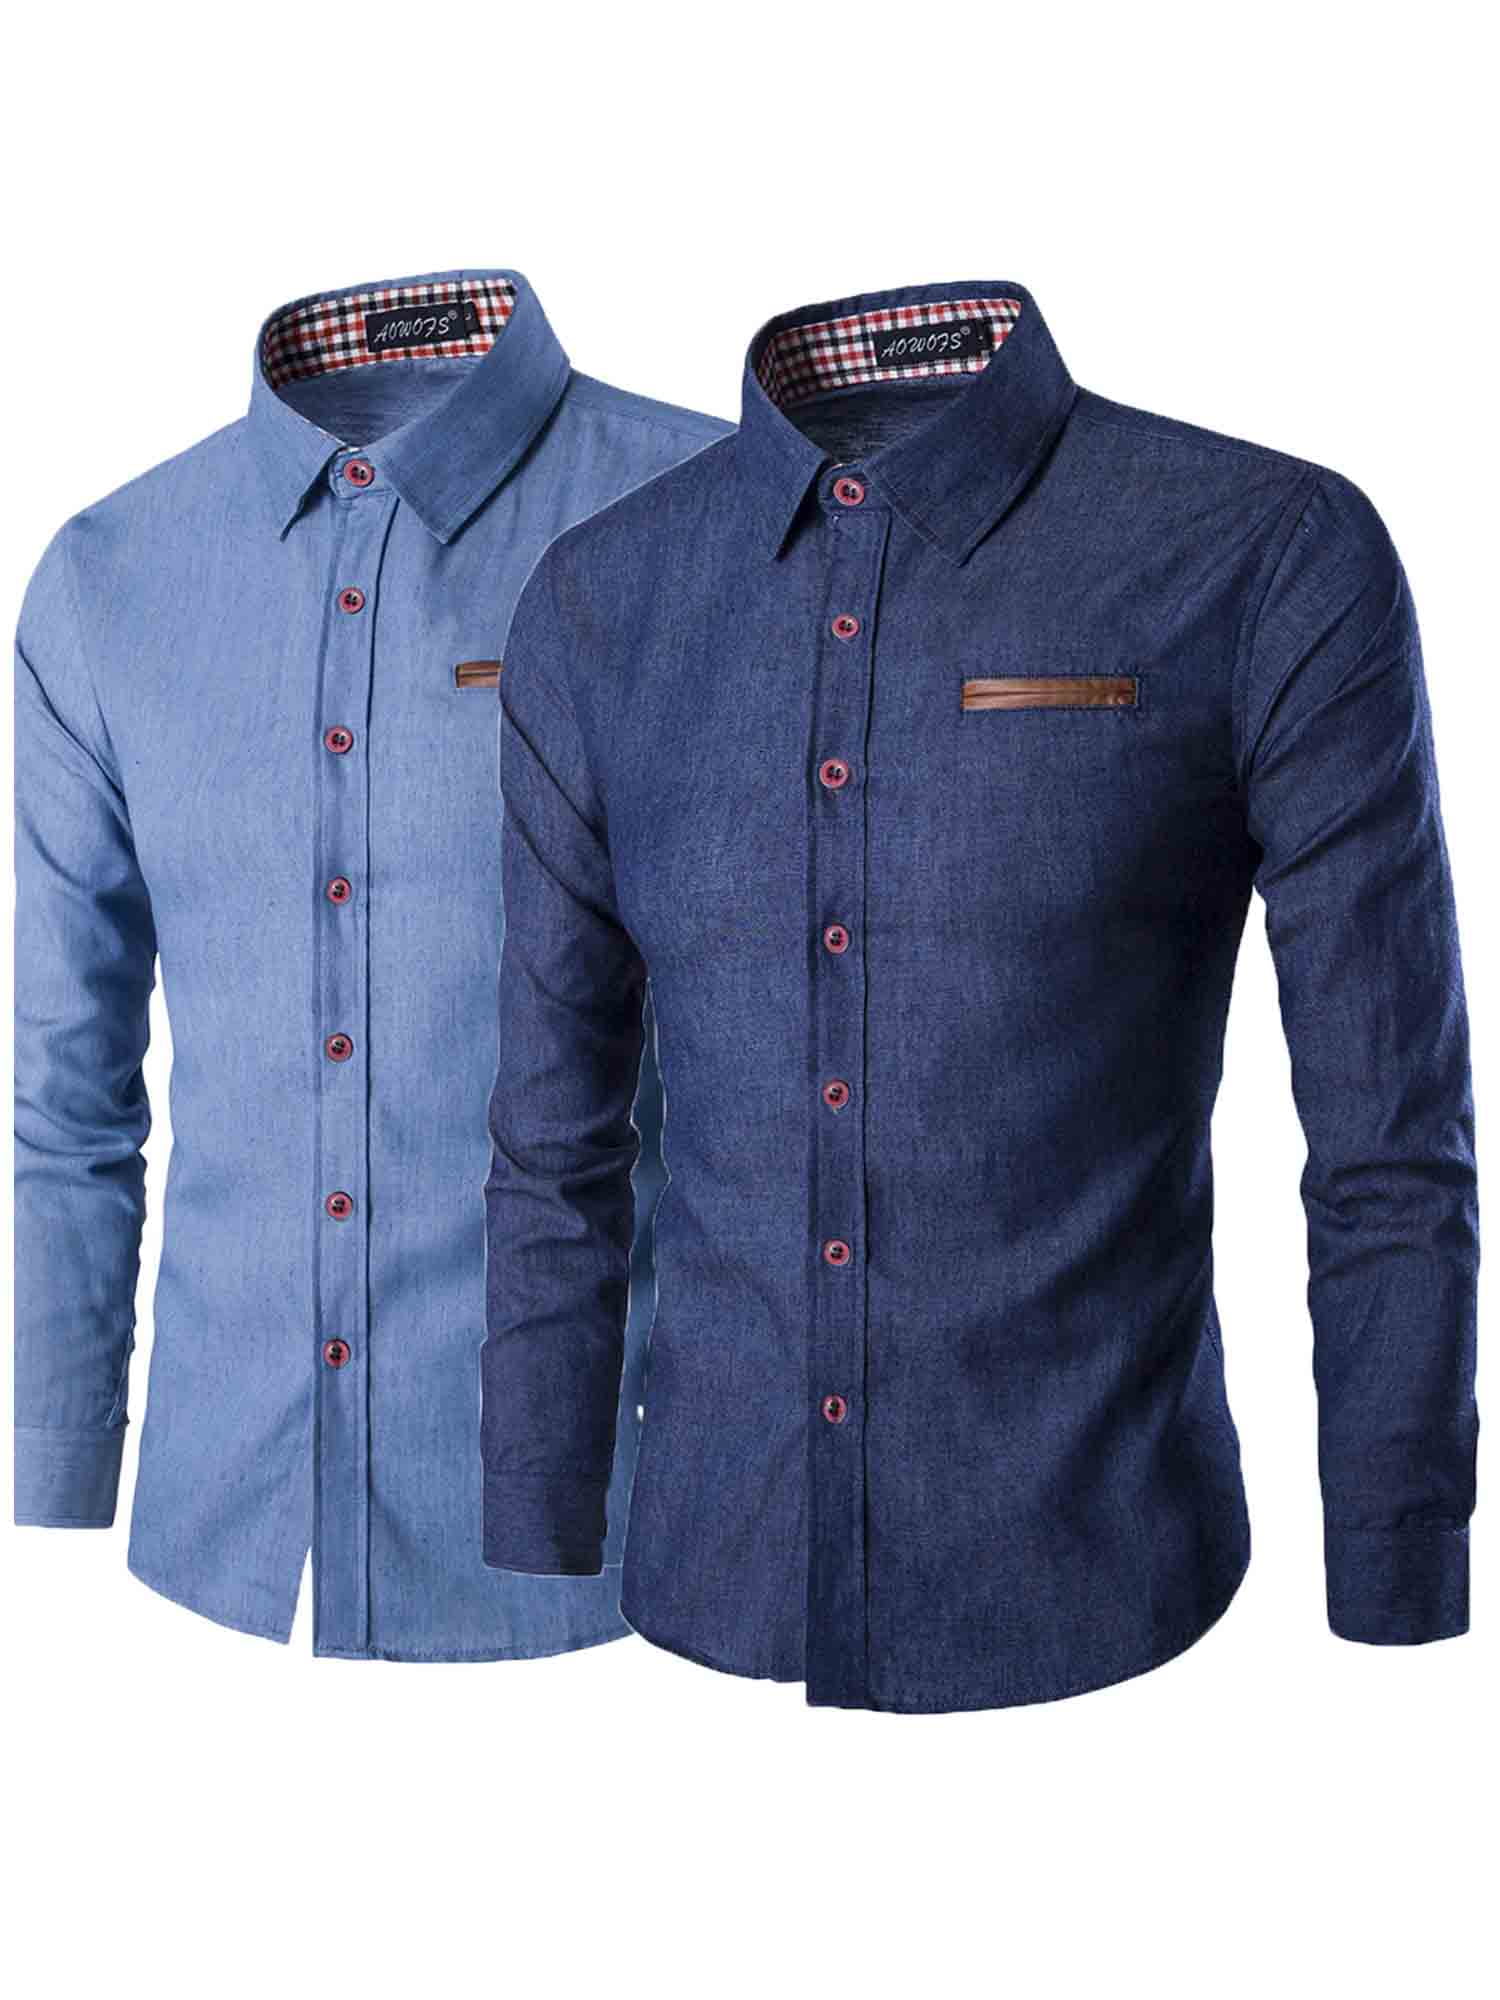 Cathery Mens Blue Dress Shirt Long Sleeve Shirt Button Up Denim Jeans ...